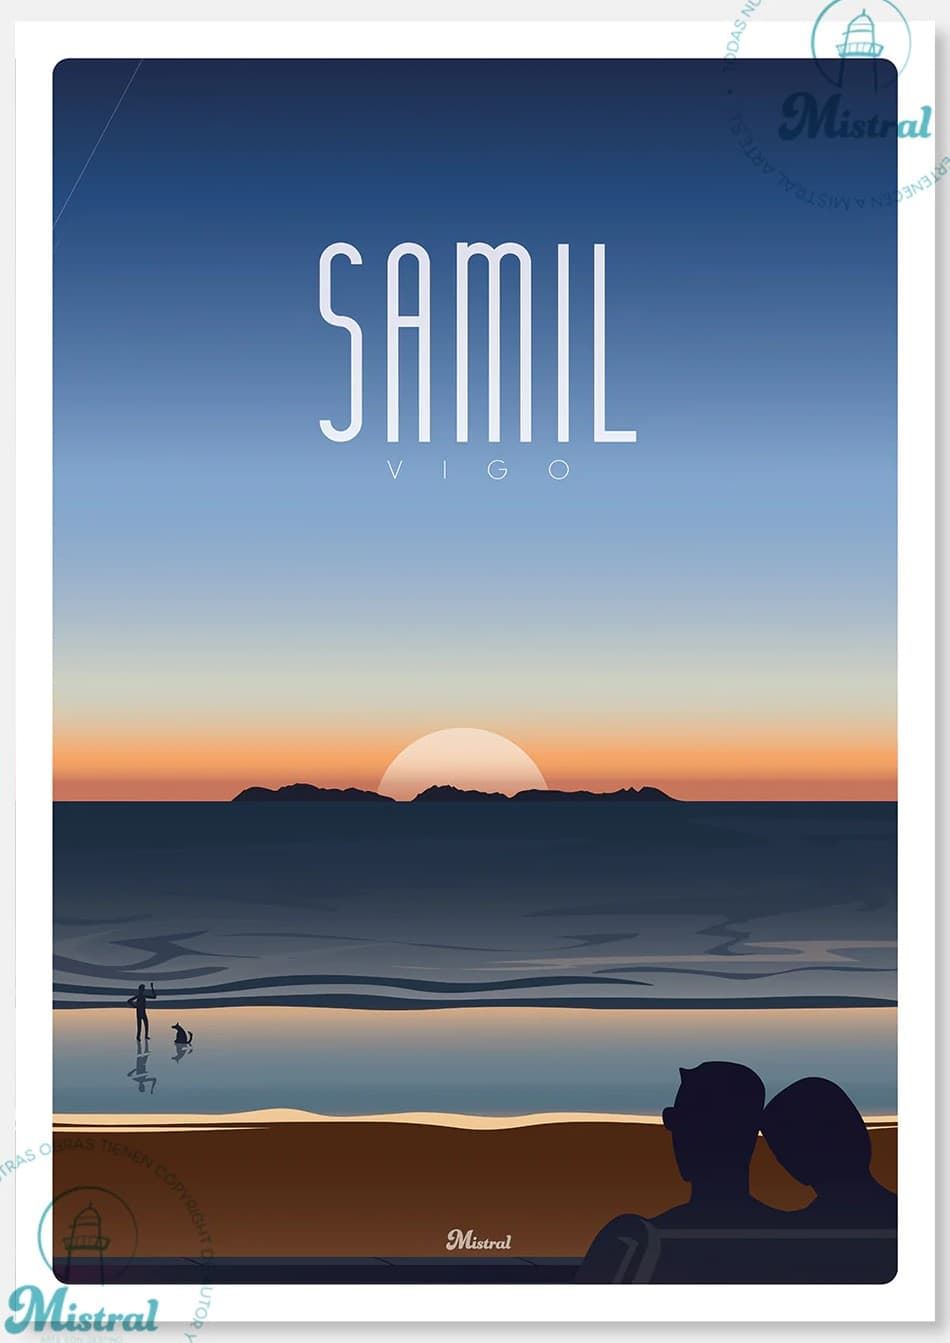 Lámina Samil (enmarcada) - Imaxe 1